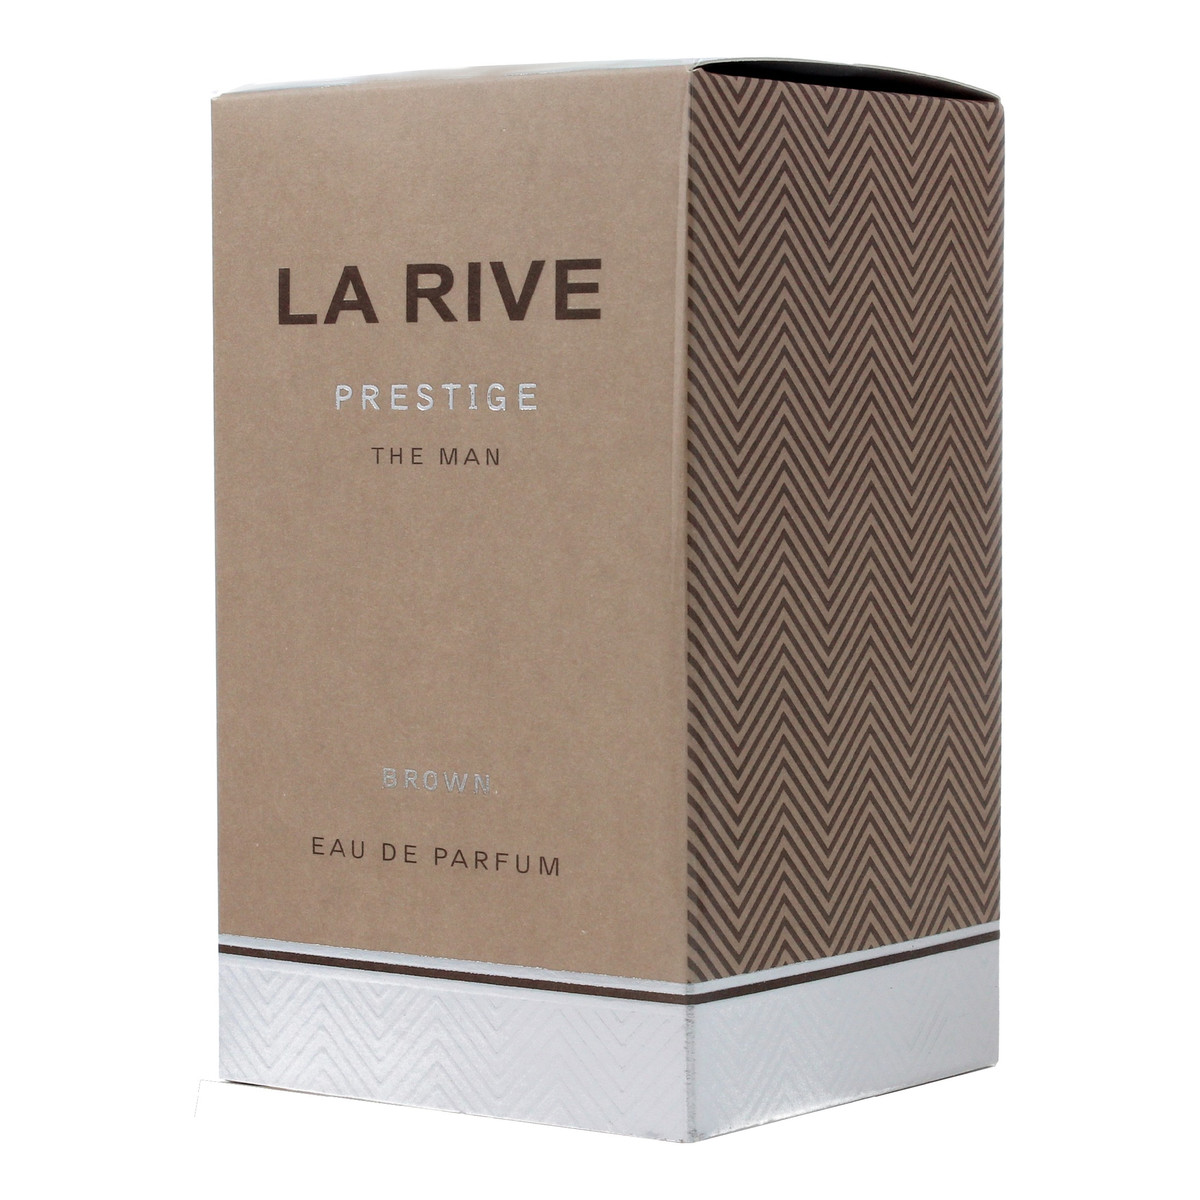 La Rive Prestige Brown Woda Perfumowana 75ml